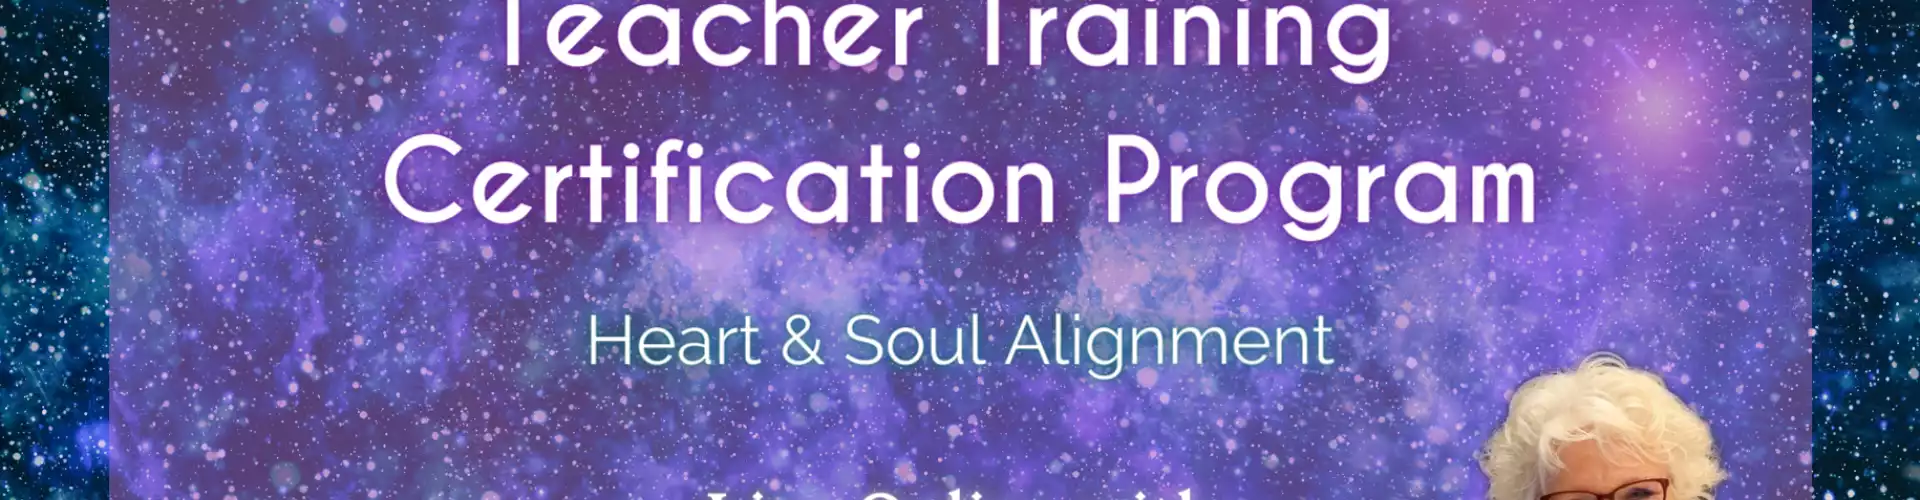 Teacher Training Certification Program